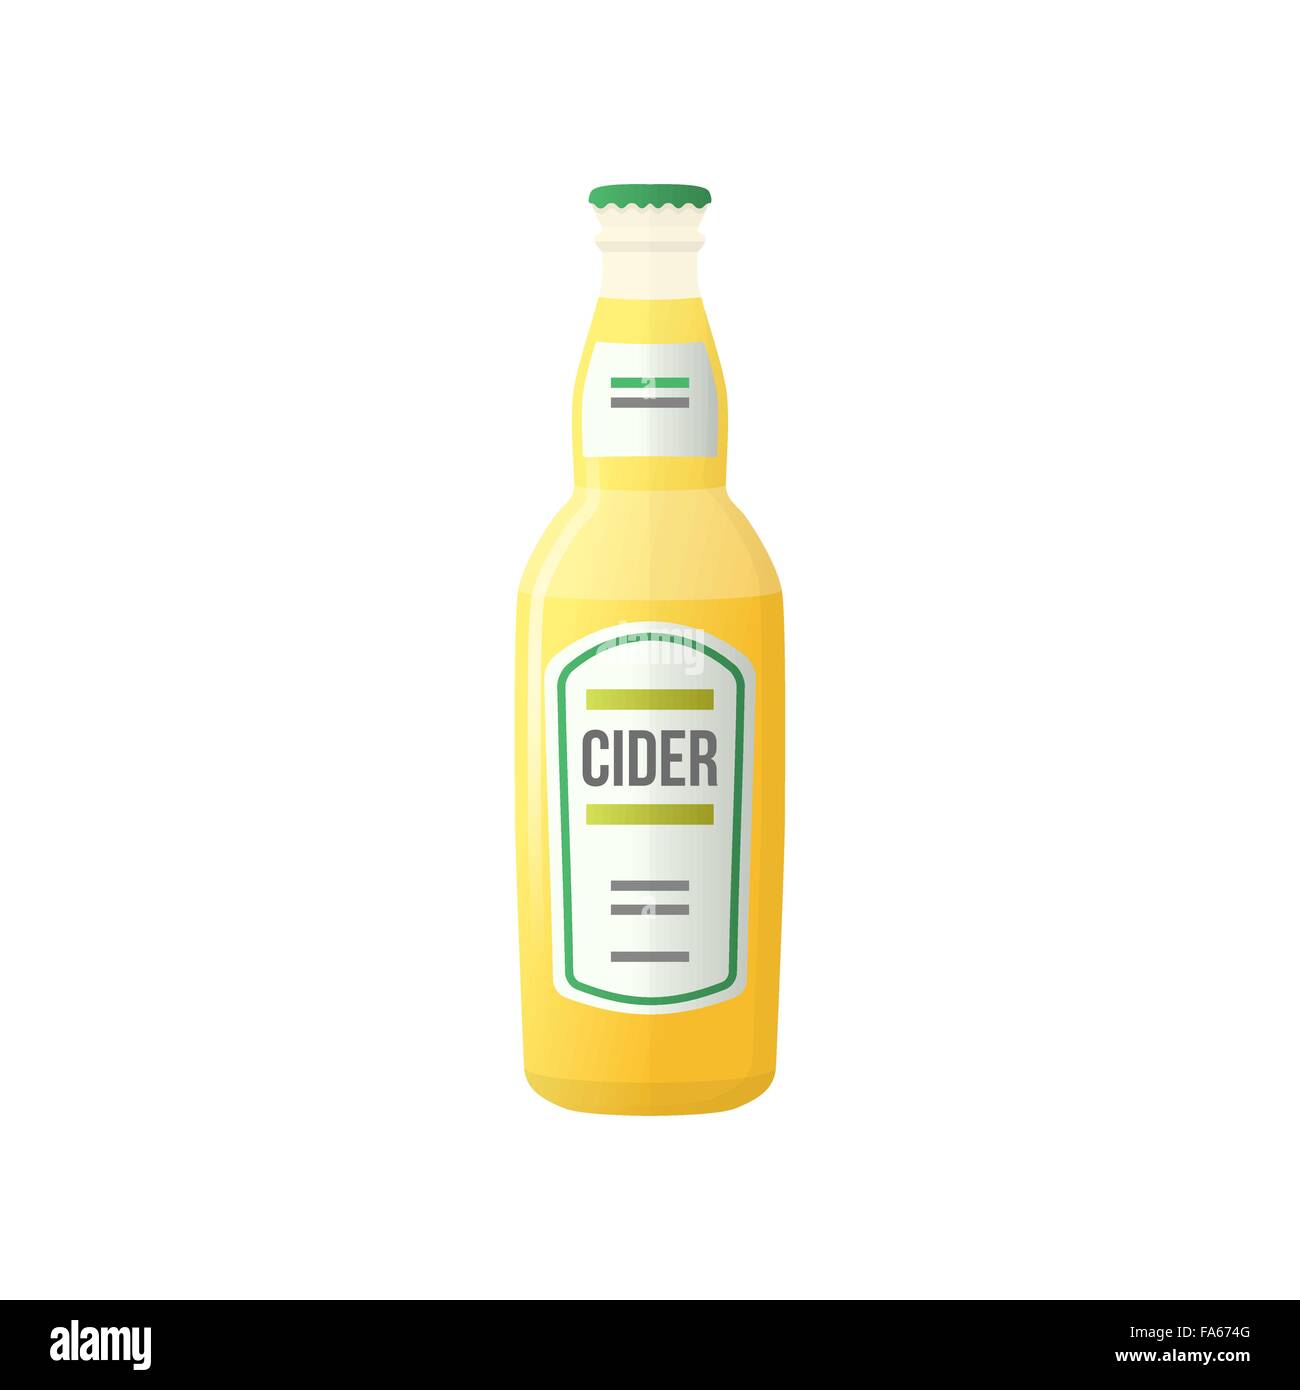 Vektor hellgelbe Farbe flaches Design Apfel Birne Cidre Flasche mit Etikett isoliert auf weißem Hintergrund Stock Vektor